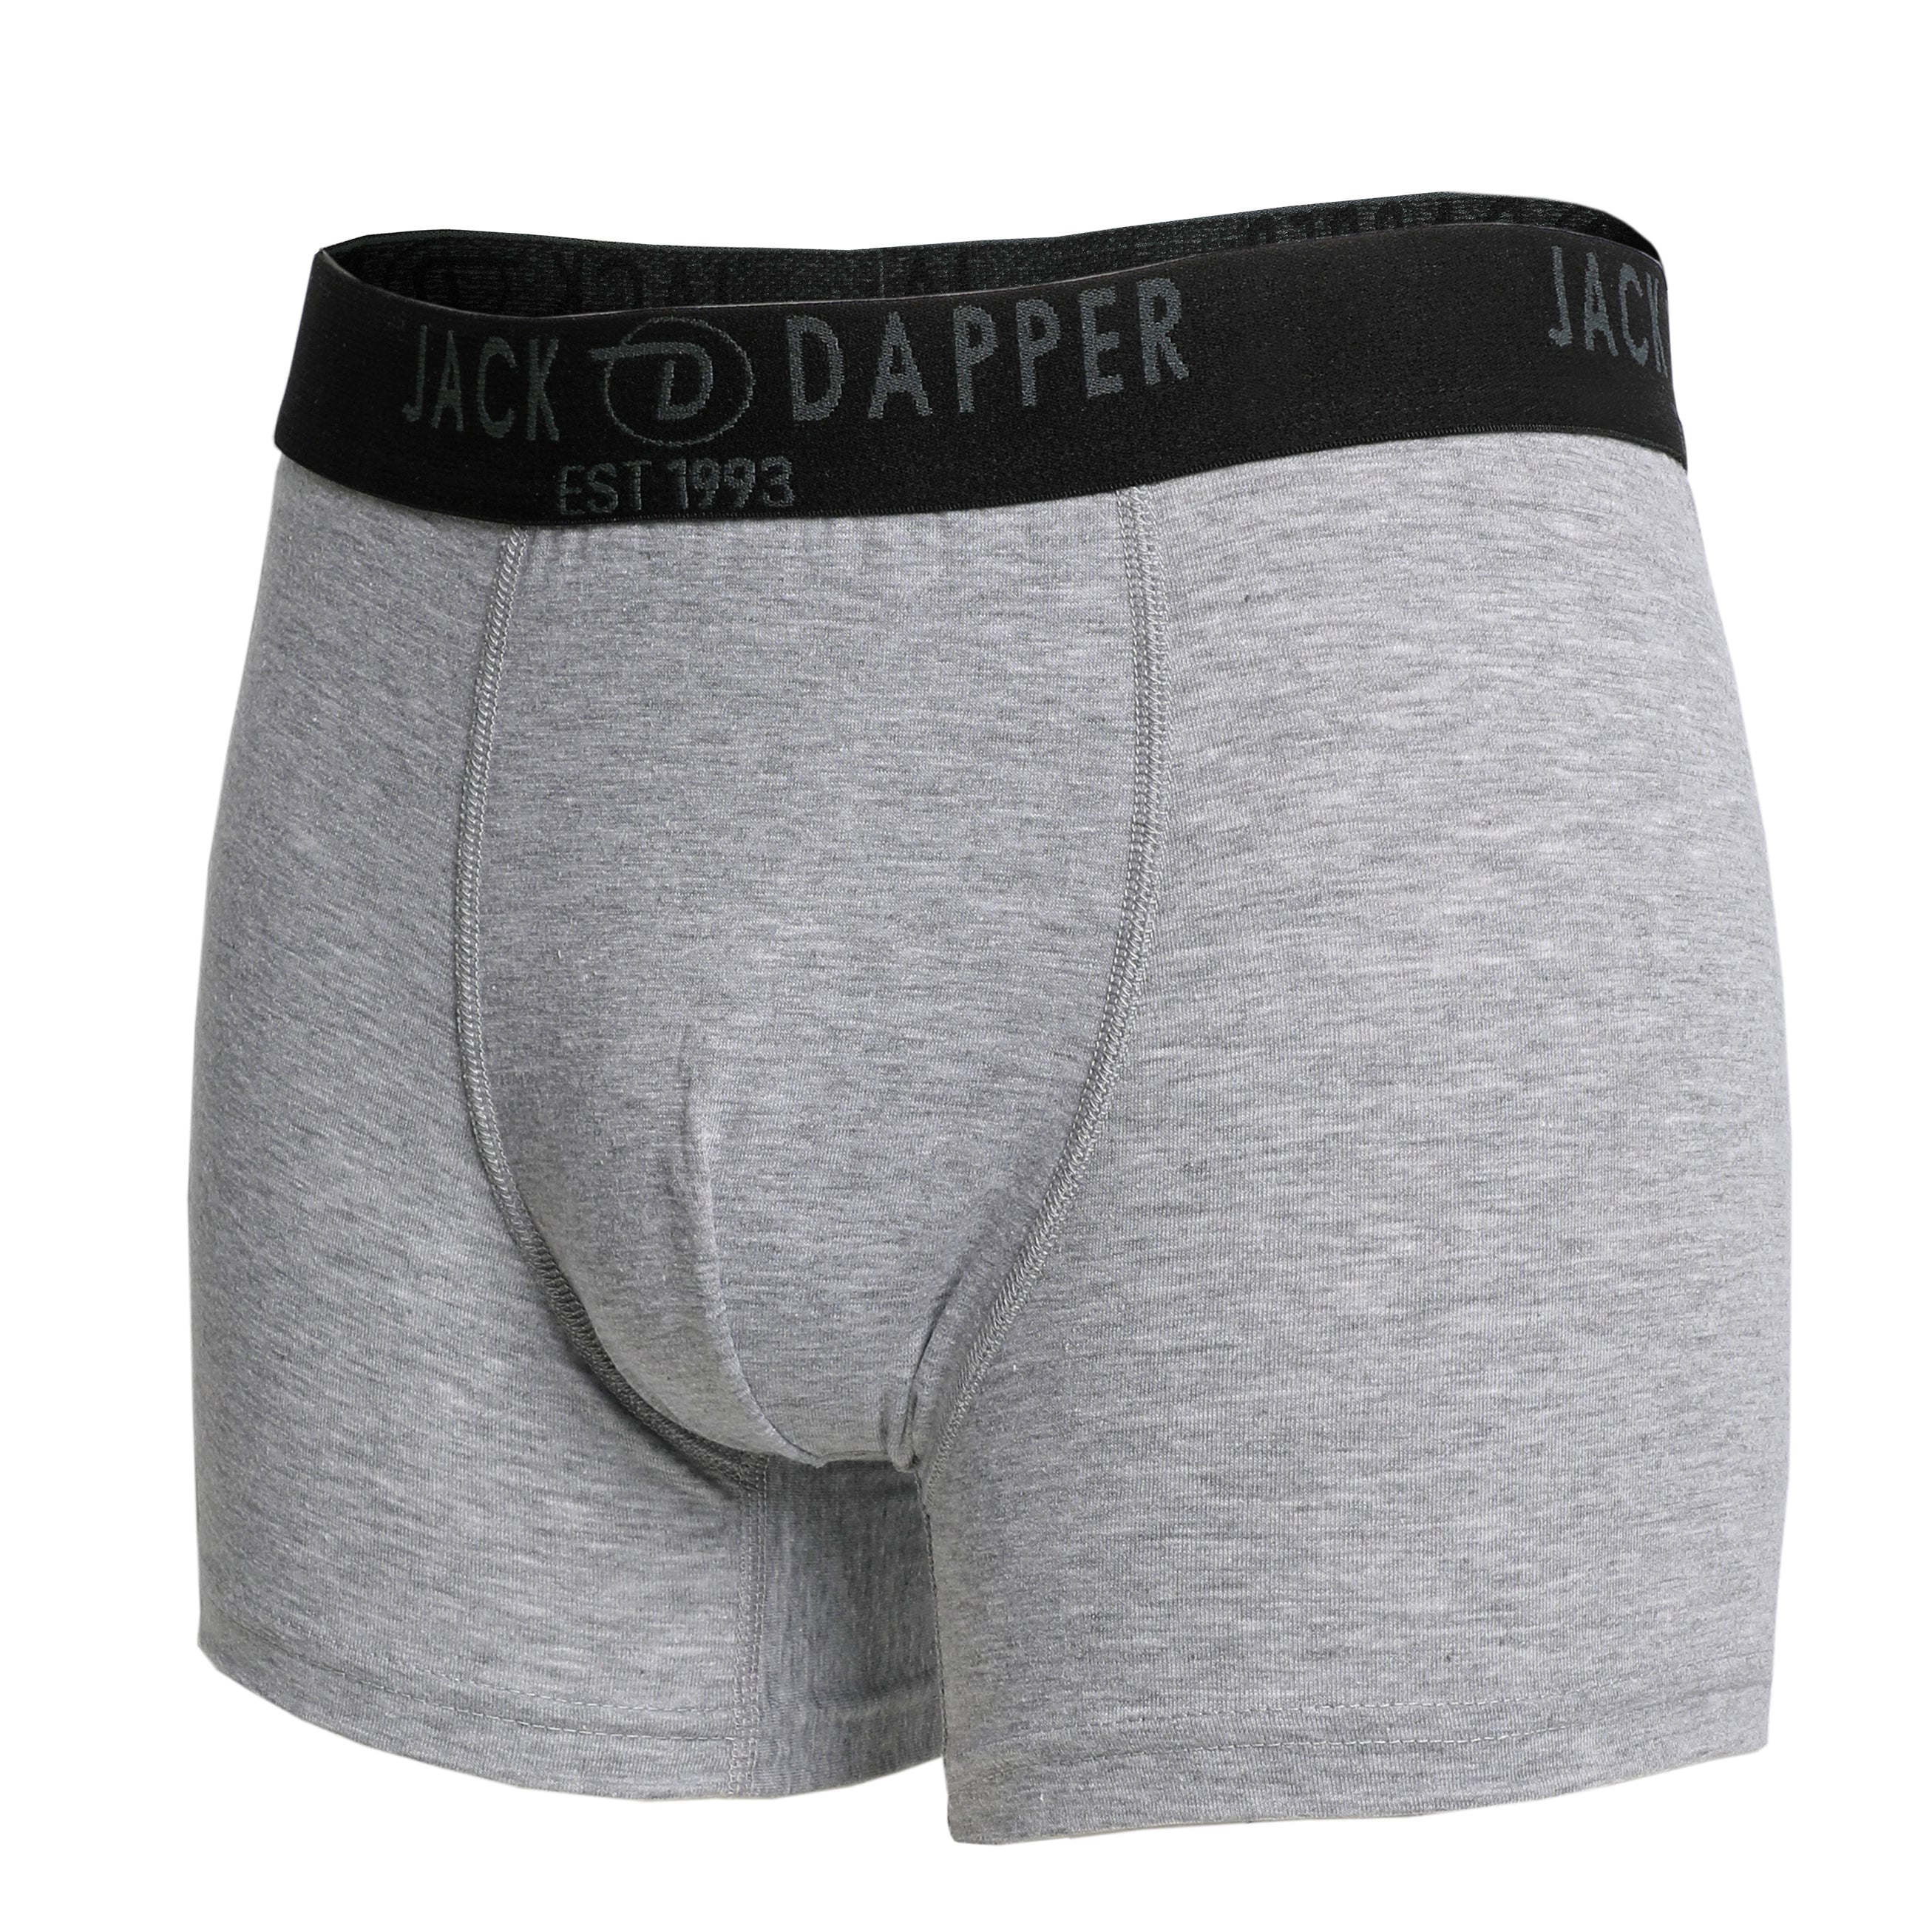 Jack Dapper Grey 2-Piece Cotton Underwear